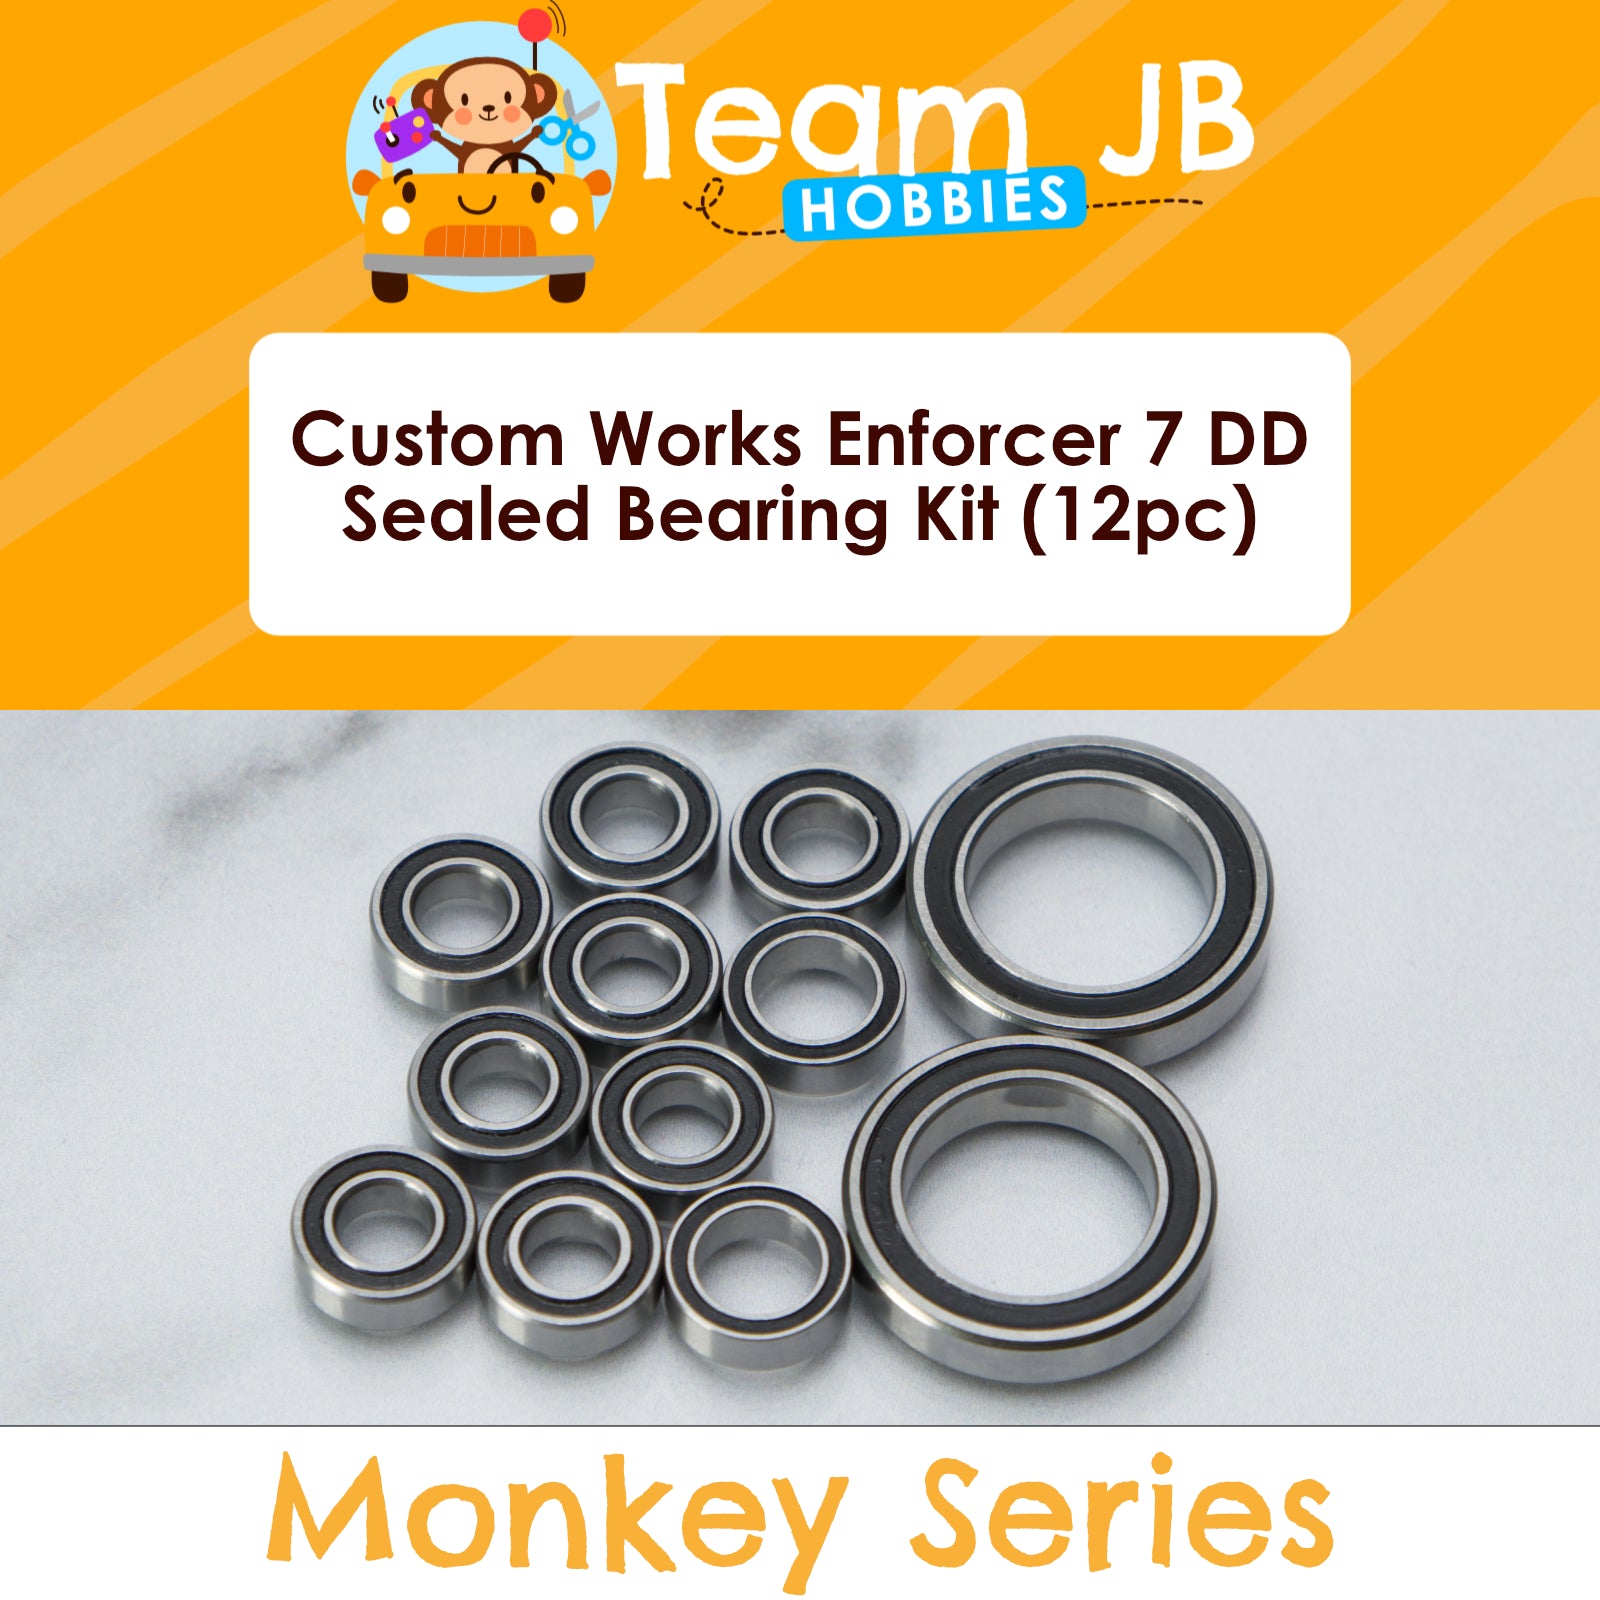 Custom Works Enforcer 7 DD - Sealed Bearing Kit